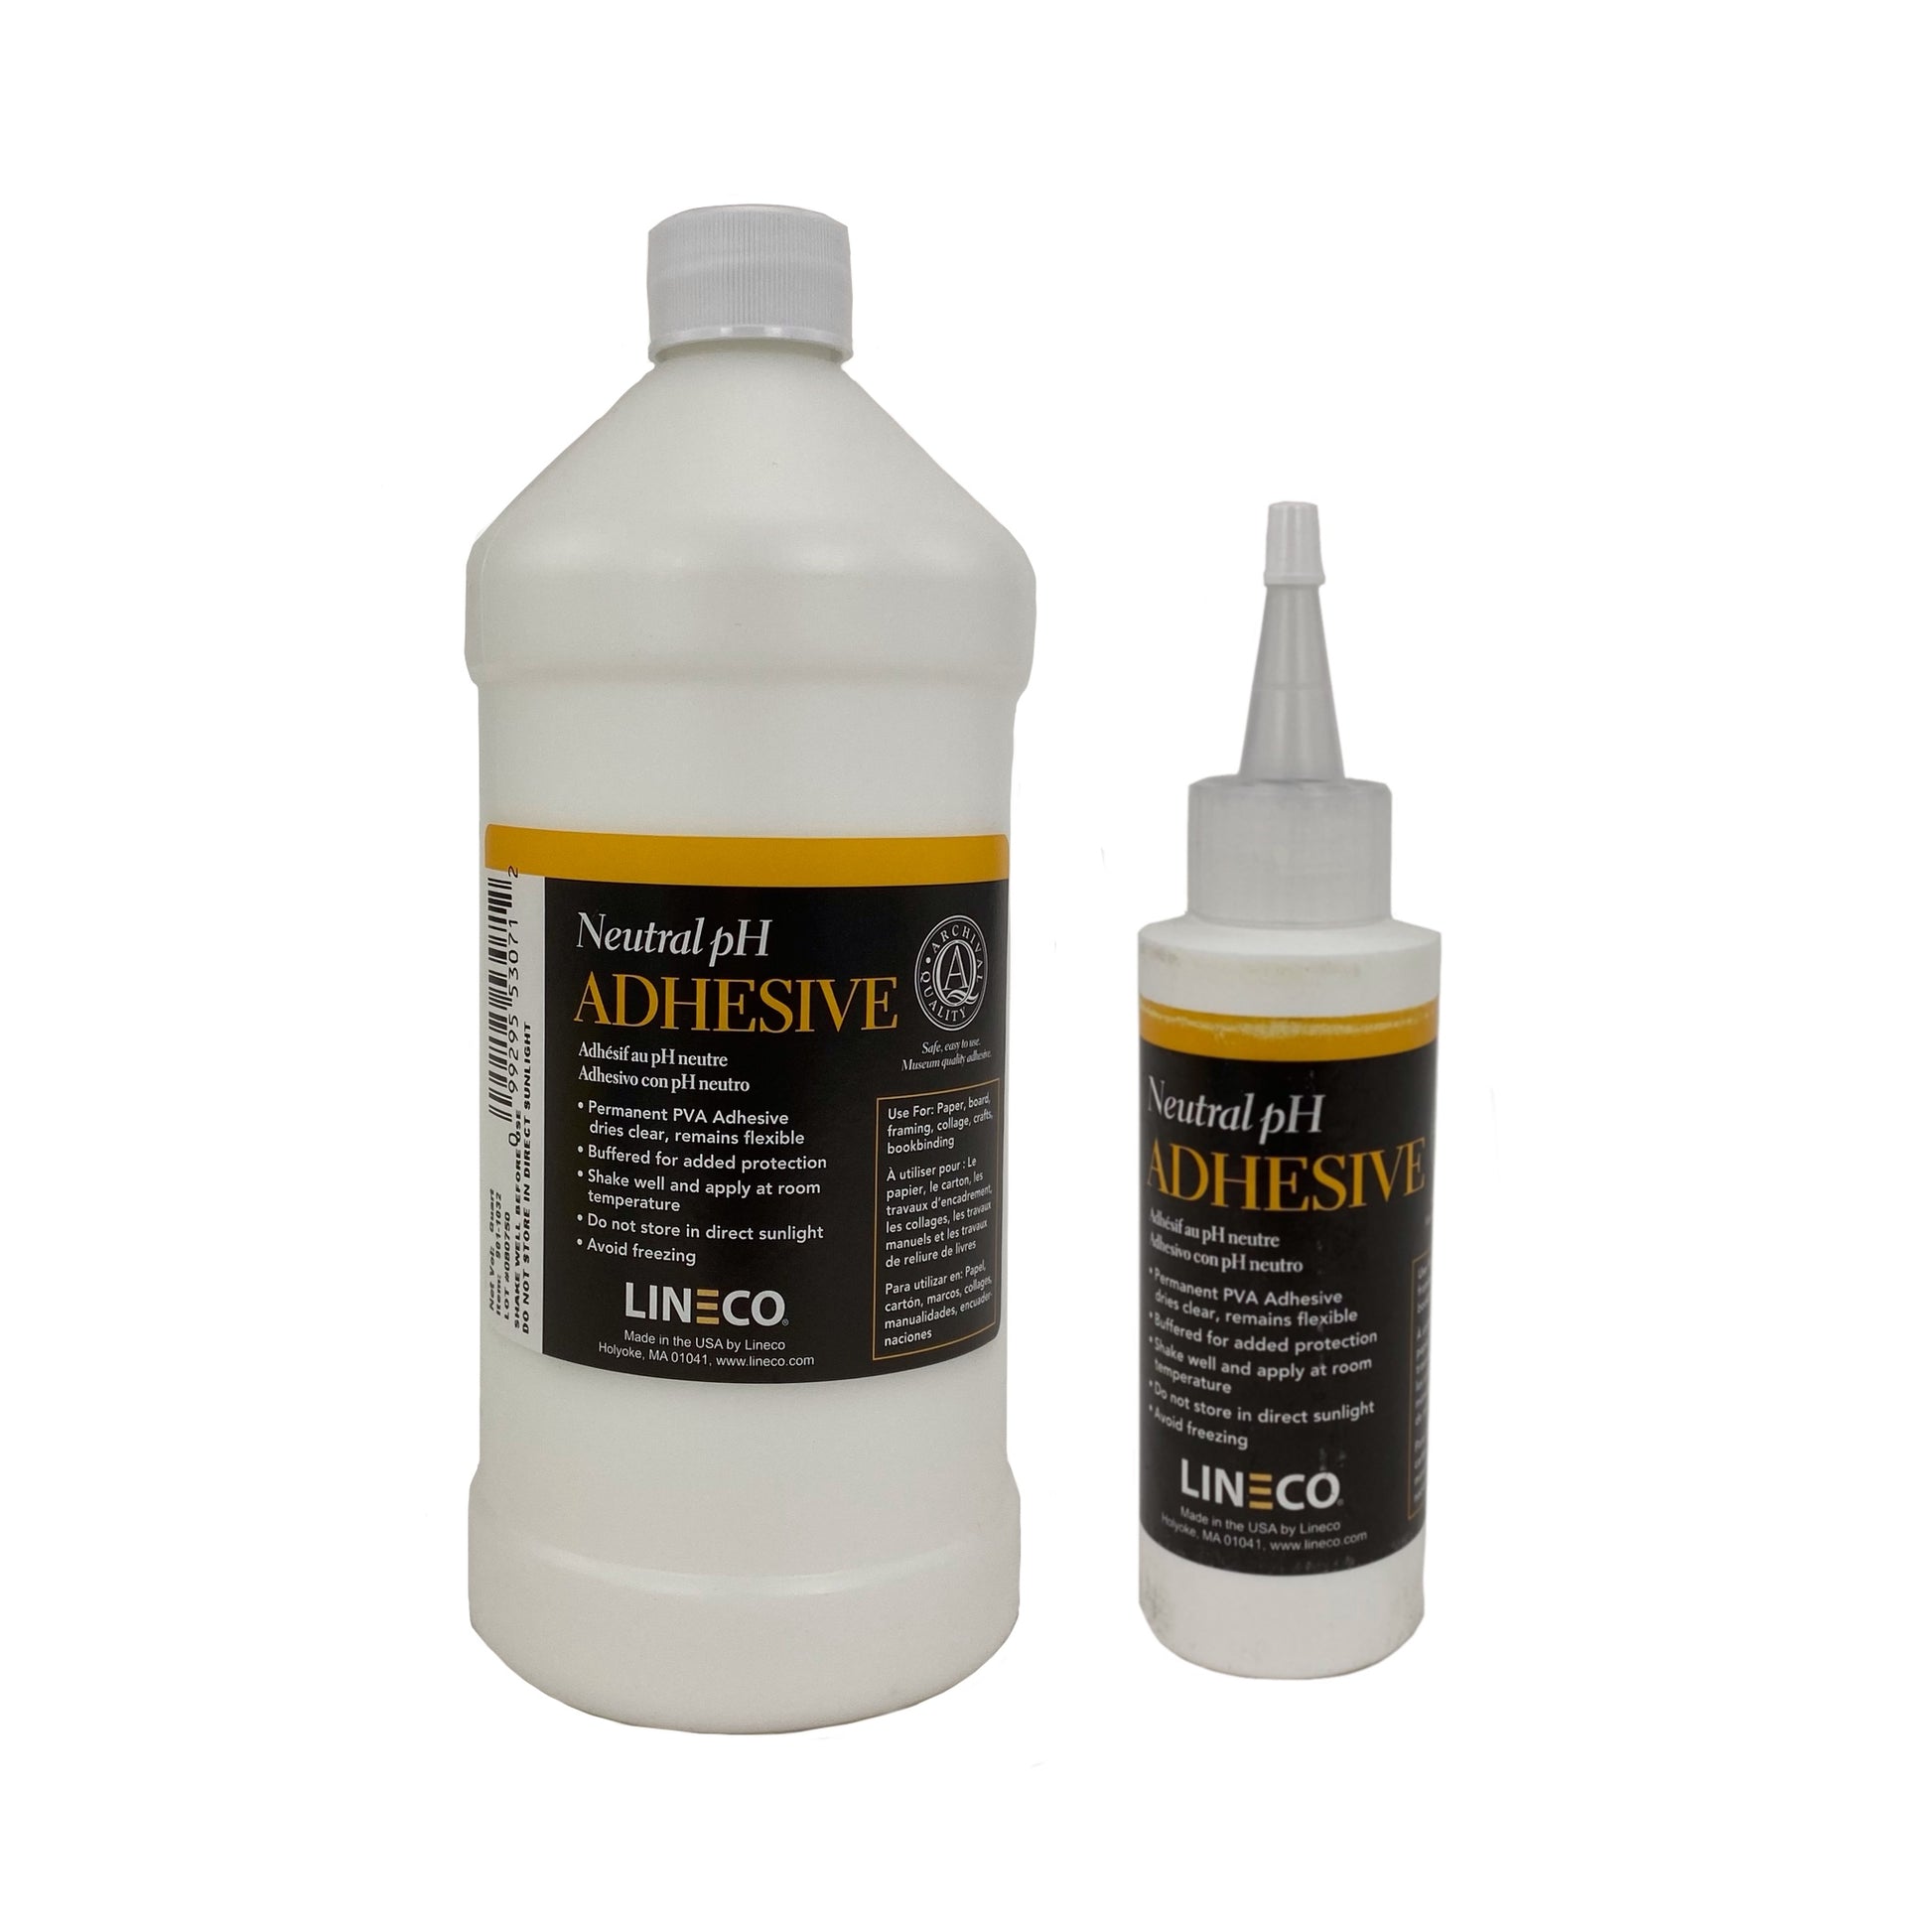 Elmer's Liquid PVA Glue, Washable, White, 118ml Great for Making Slime